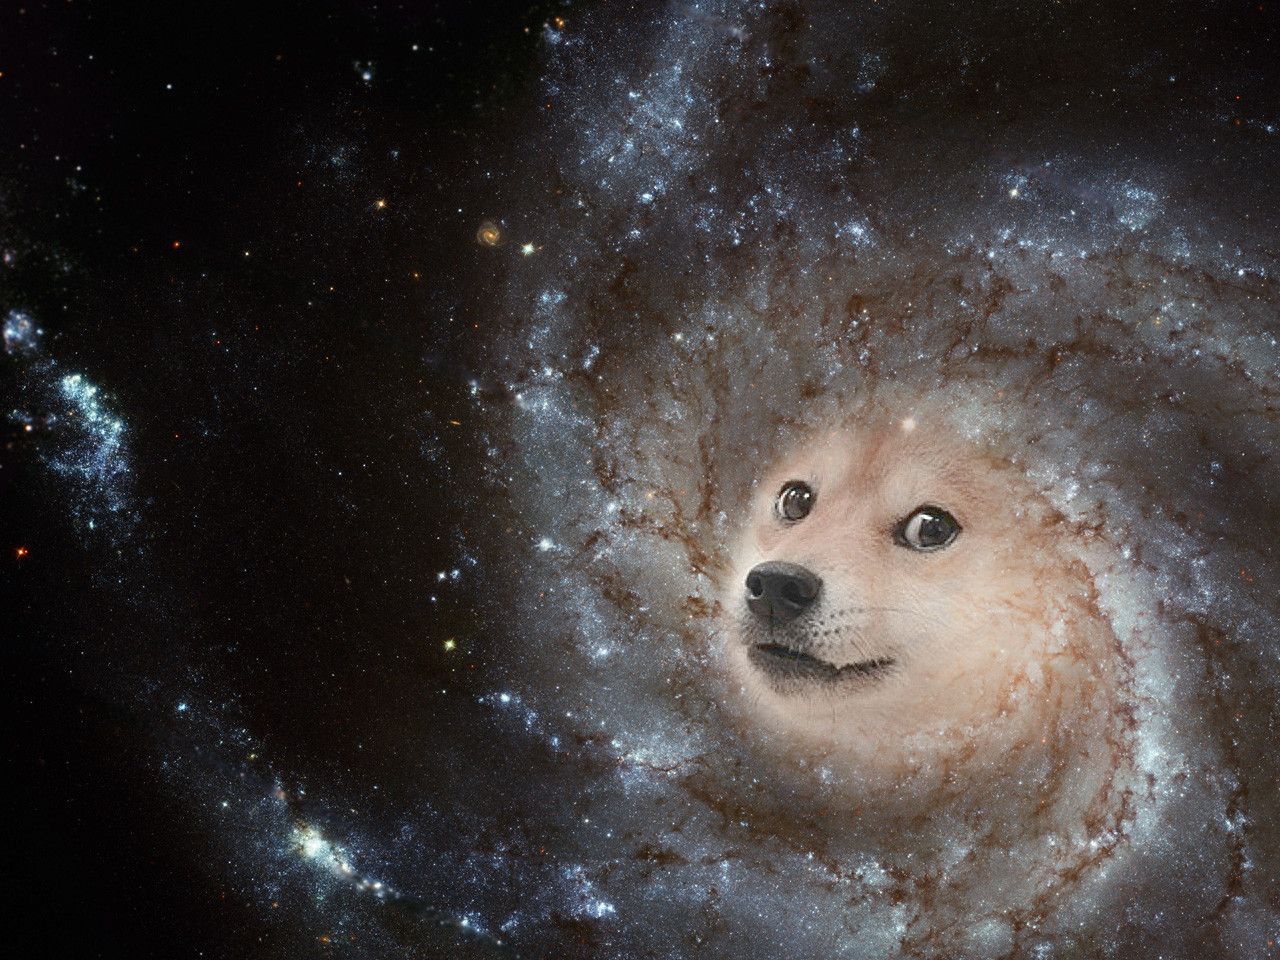 Hãy thưởng thức hình ảnh liên quan đến từ khóa Galaxy Dog và khám phá một không gian kỳ diệu, nơi những chú chó đáng yêu đang khám phá những chân trời mới trong dải ngân hà. Sự kết hợp giữa tình bạn và cuộc phiêu lưu đầy thú vị sẽ làm say đắm lòng người.